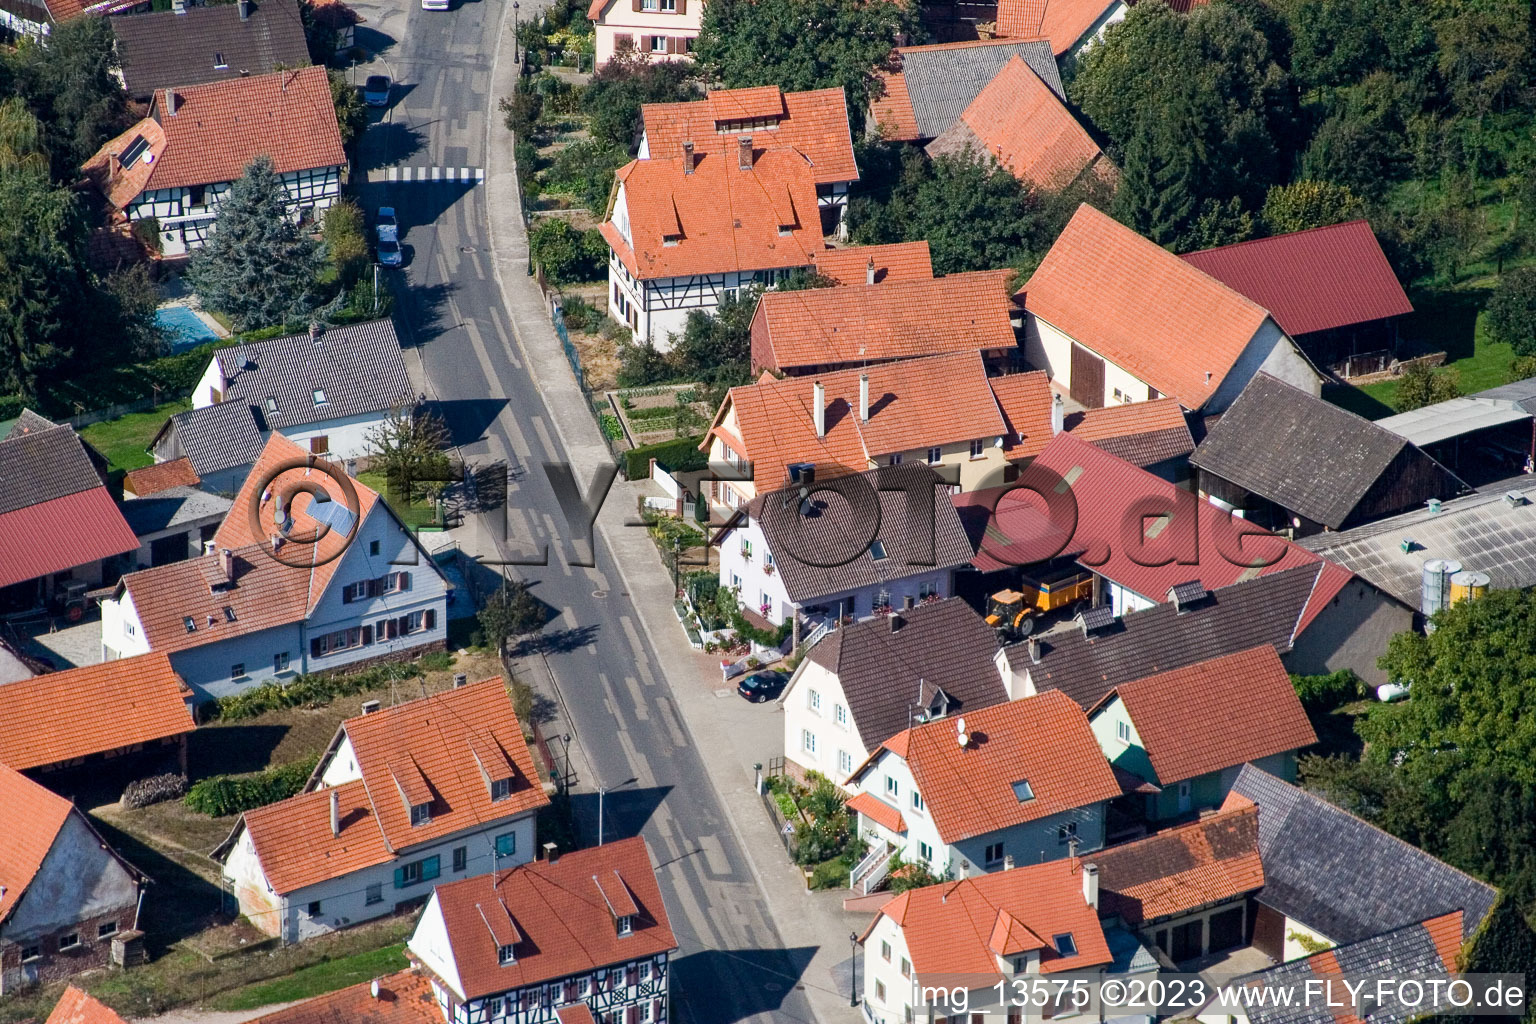 Luftaufnahme von Salmbach im Bundesland Bas-Rhin, Frankreich